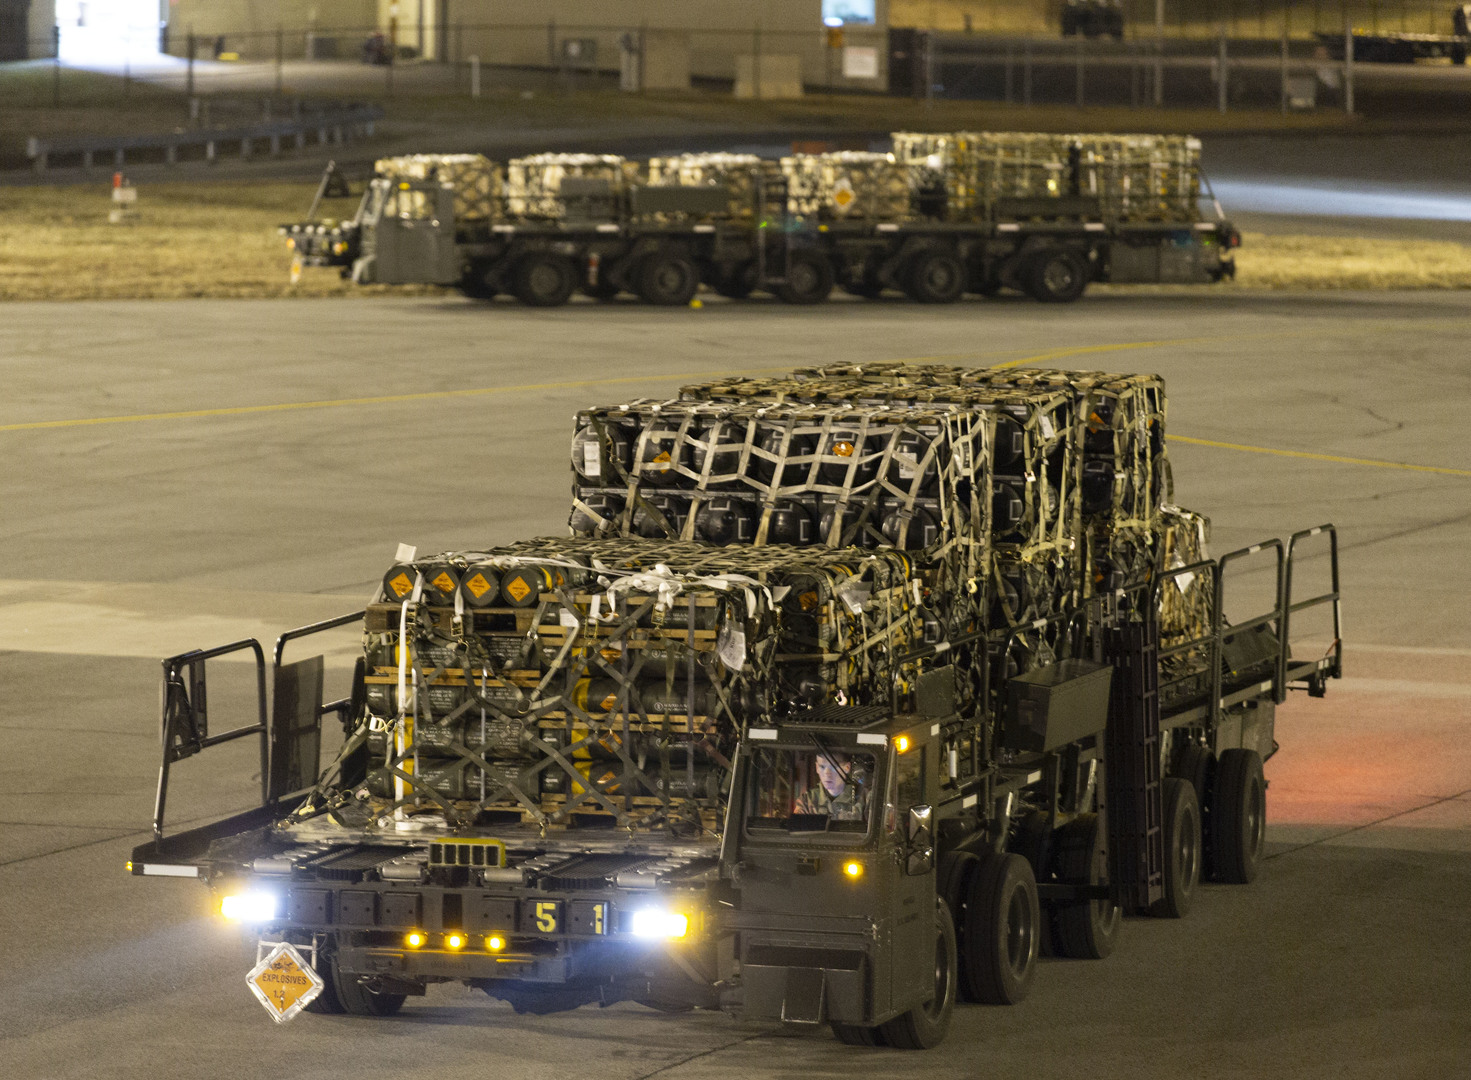 Des munitions, armes et autres équipements américains à destination de l'Ukraine, à la Dover Air Force Base dans le Delaware aux Etats-Unis, le 24 janvier 2022 (image d'illustration).